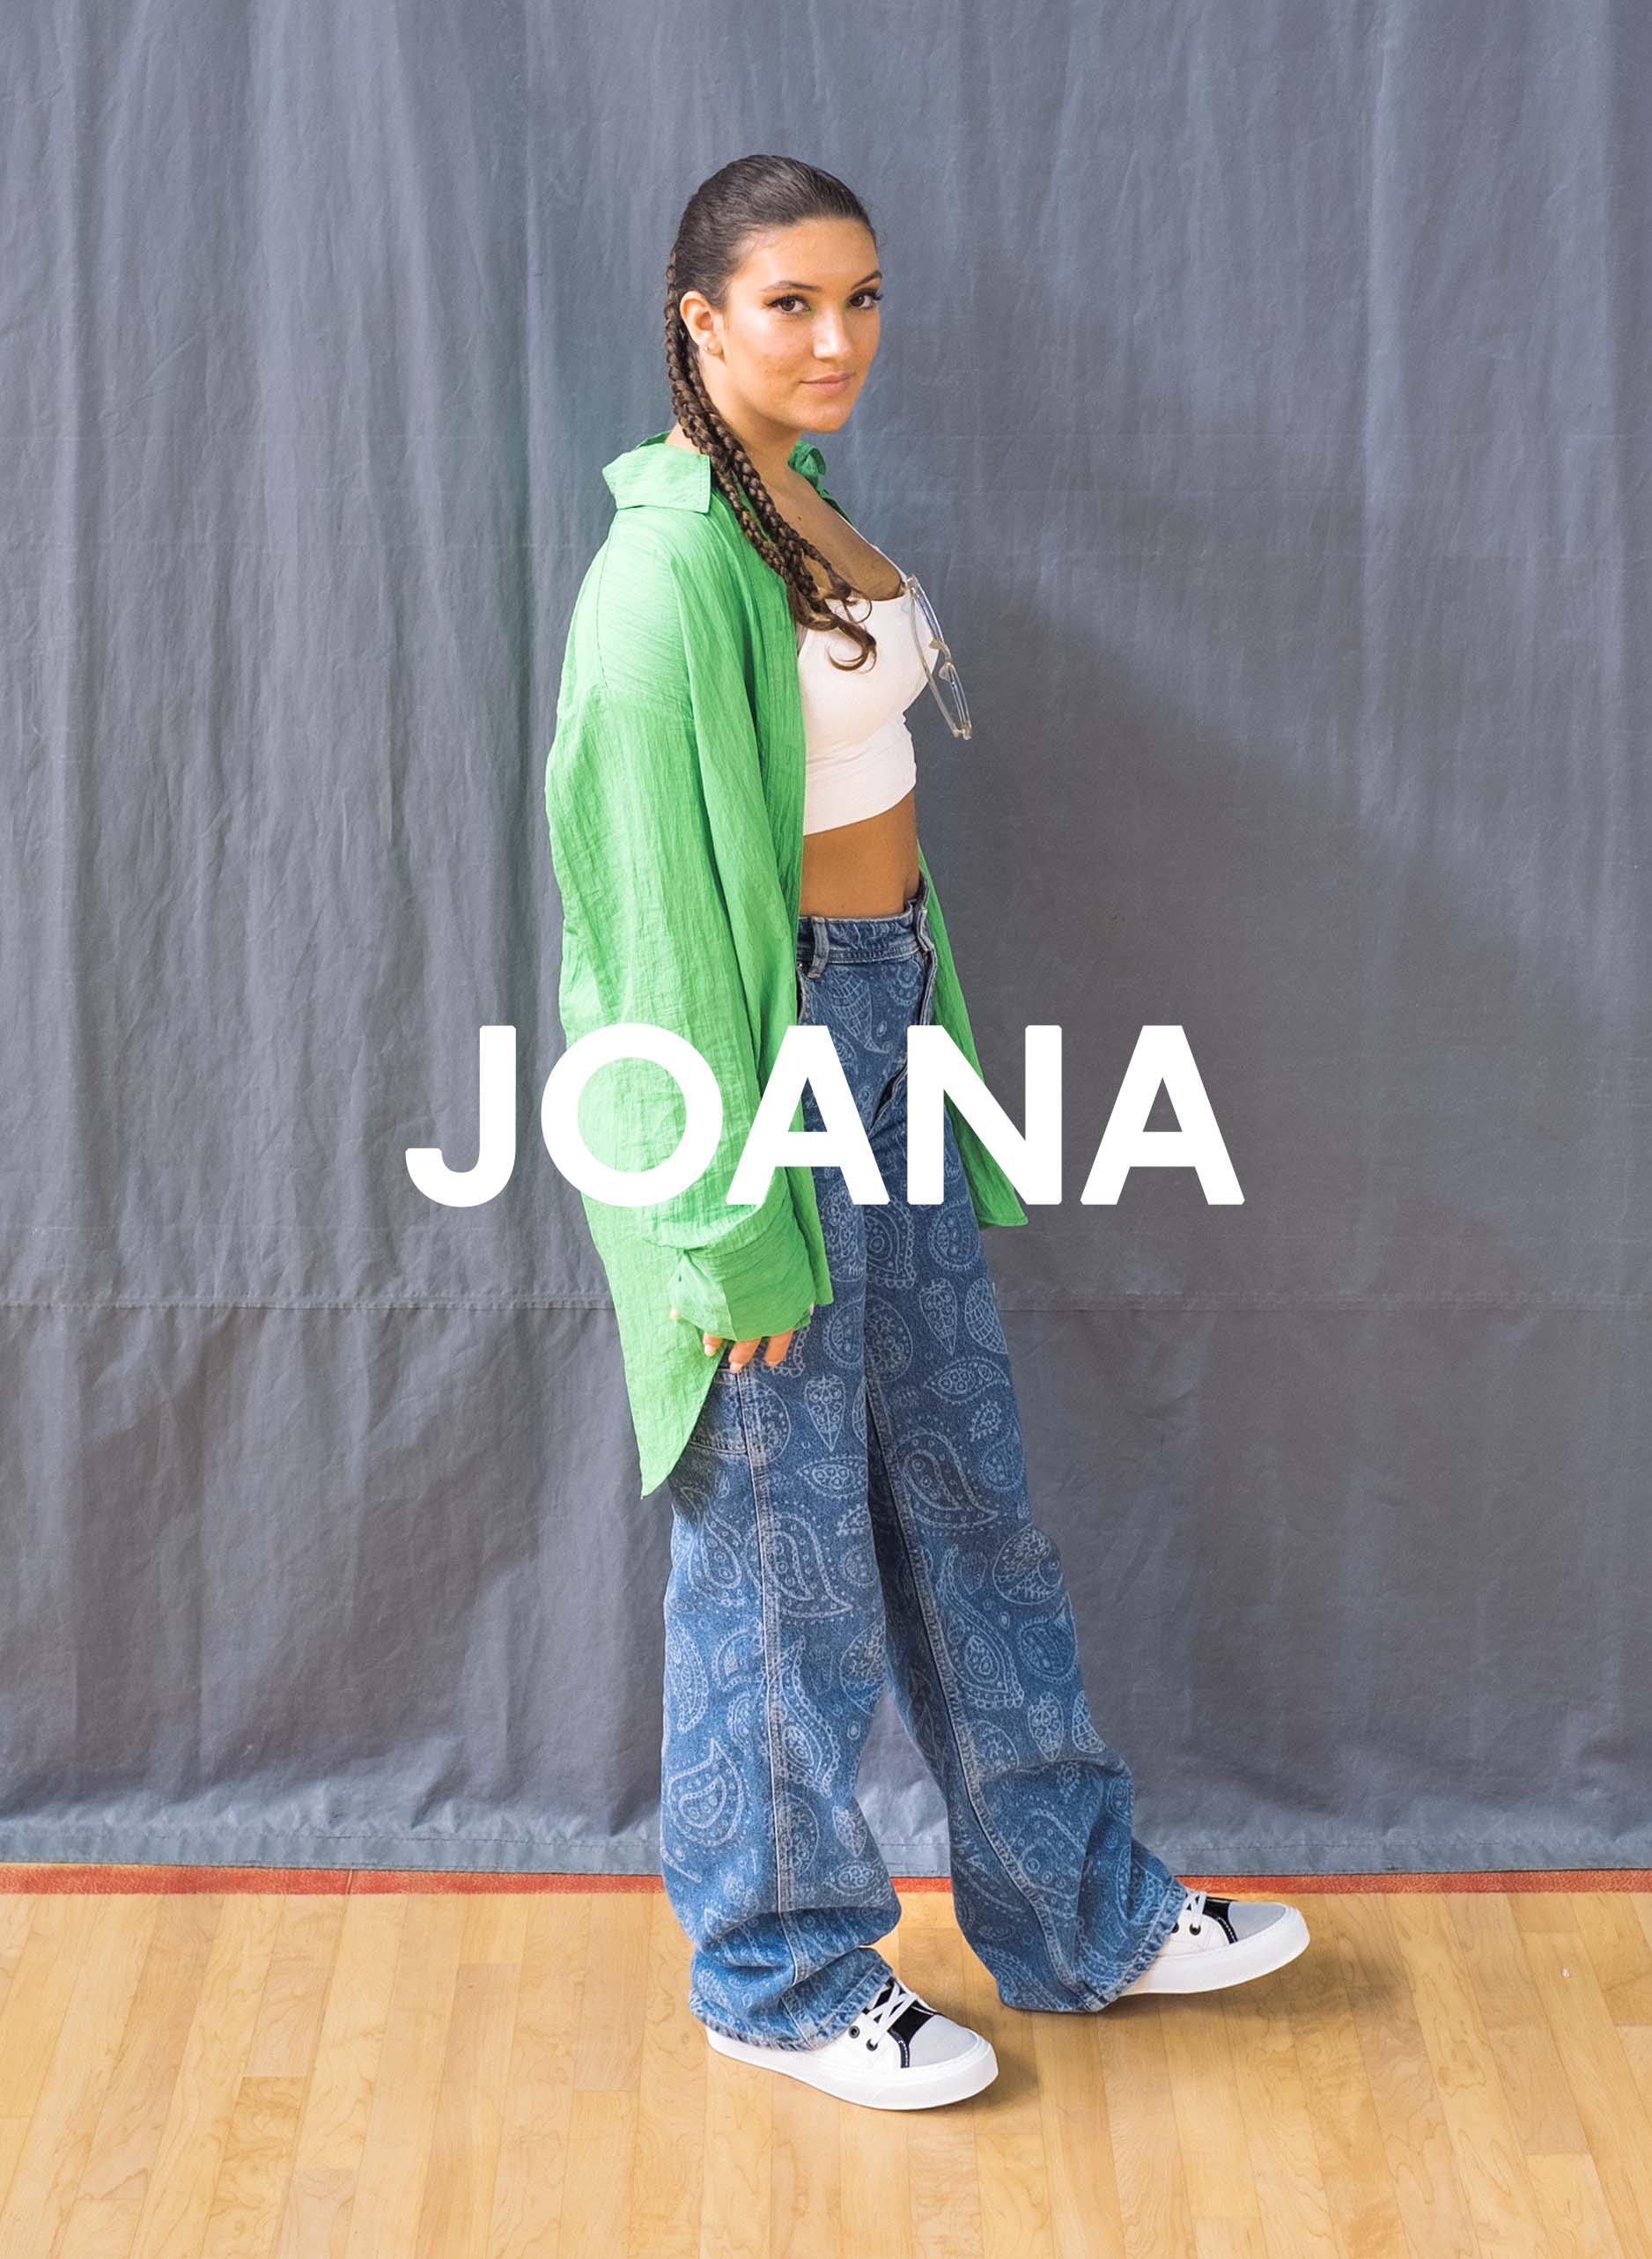 Joana con camisa verde y jeans de pie sobre un piso de madera, Diverge sneakers, promoviendo el impacto social y el calzado personalizado a través del proyecto Imagine.  